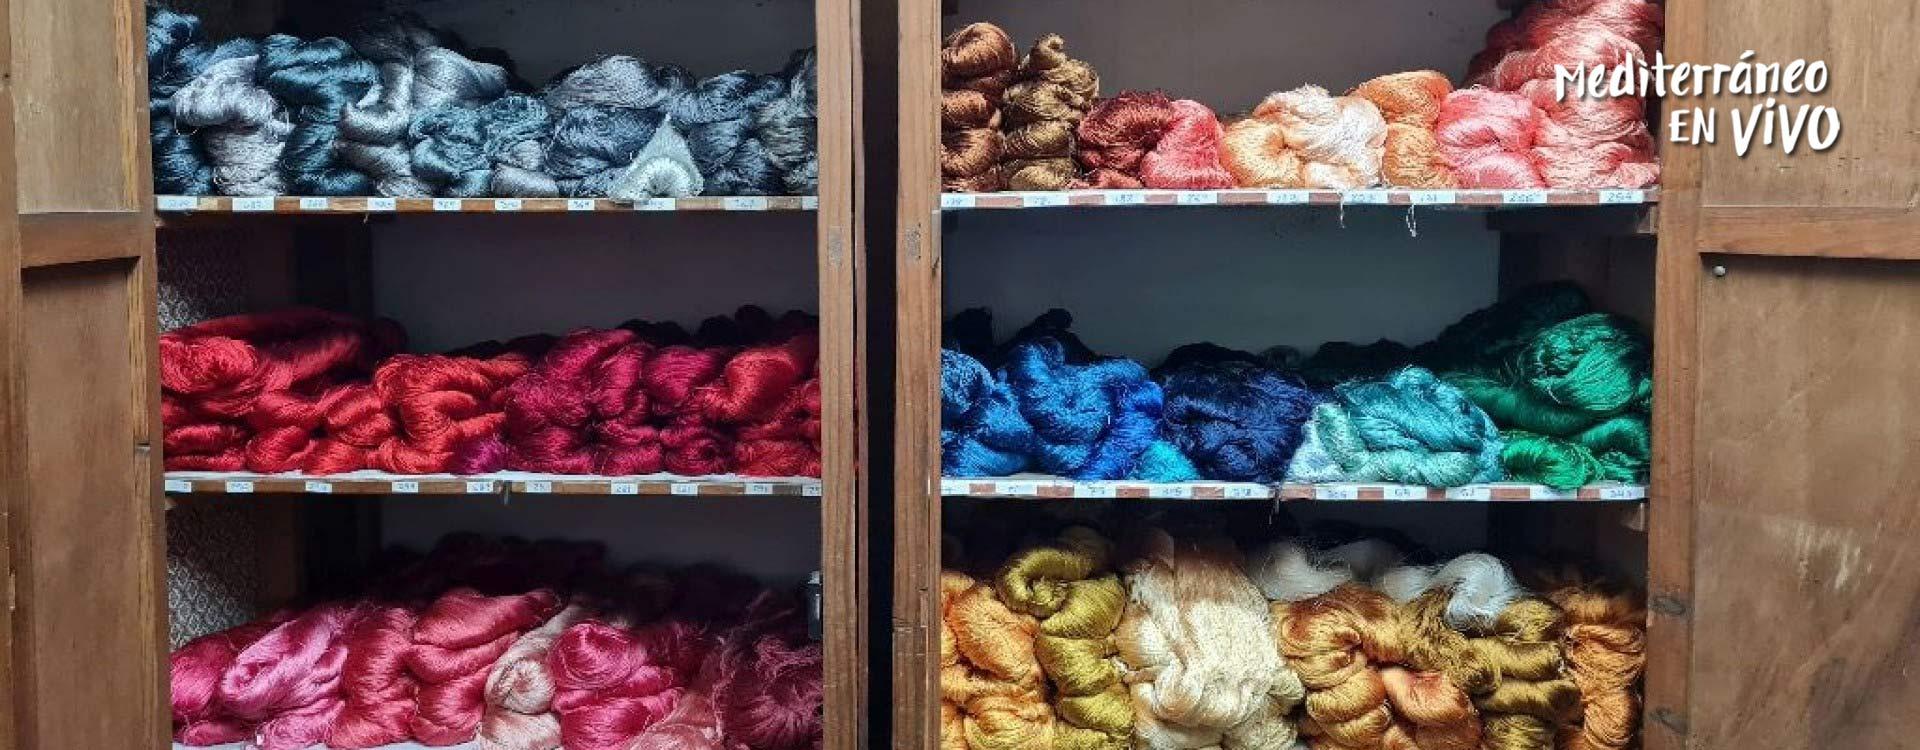 Imagen de hilos de seda de diferentes colores